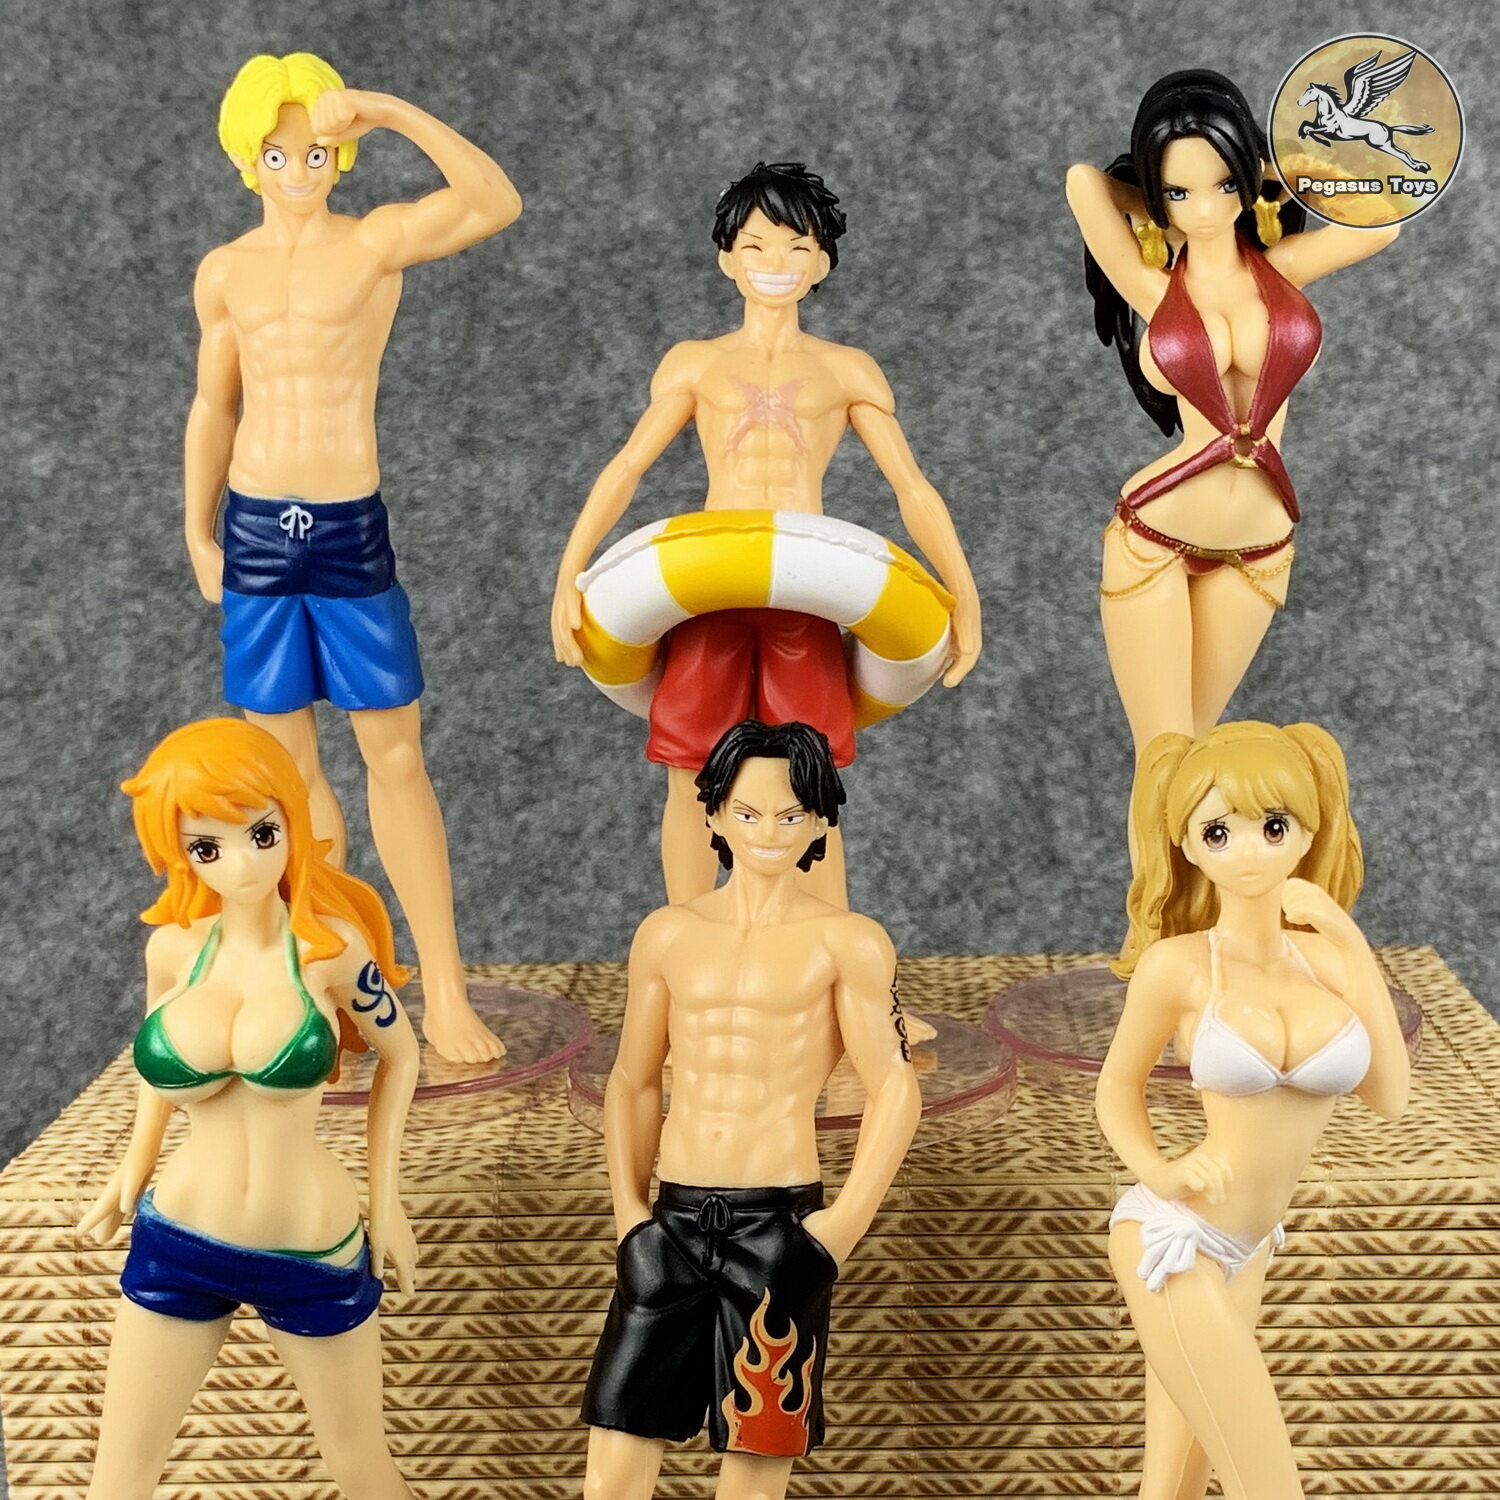 โมเดล วันพีช (One Piece) ในชุดว่ายน้ำ Summer Holiday มี 6 ตัวให้เลือก สูงประมาณ 12 ซม. งานสวยราคาถูก พร้อมส่งคร้าบ💥✨ - Pegasus Toys